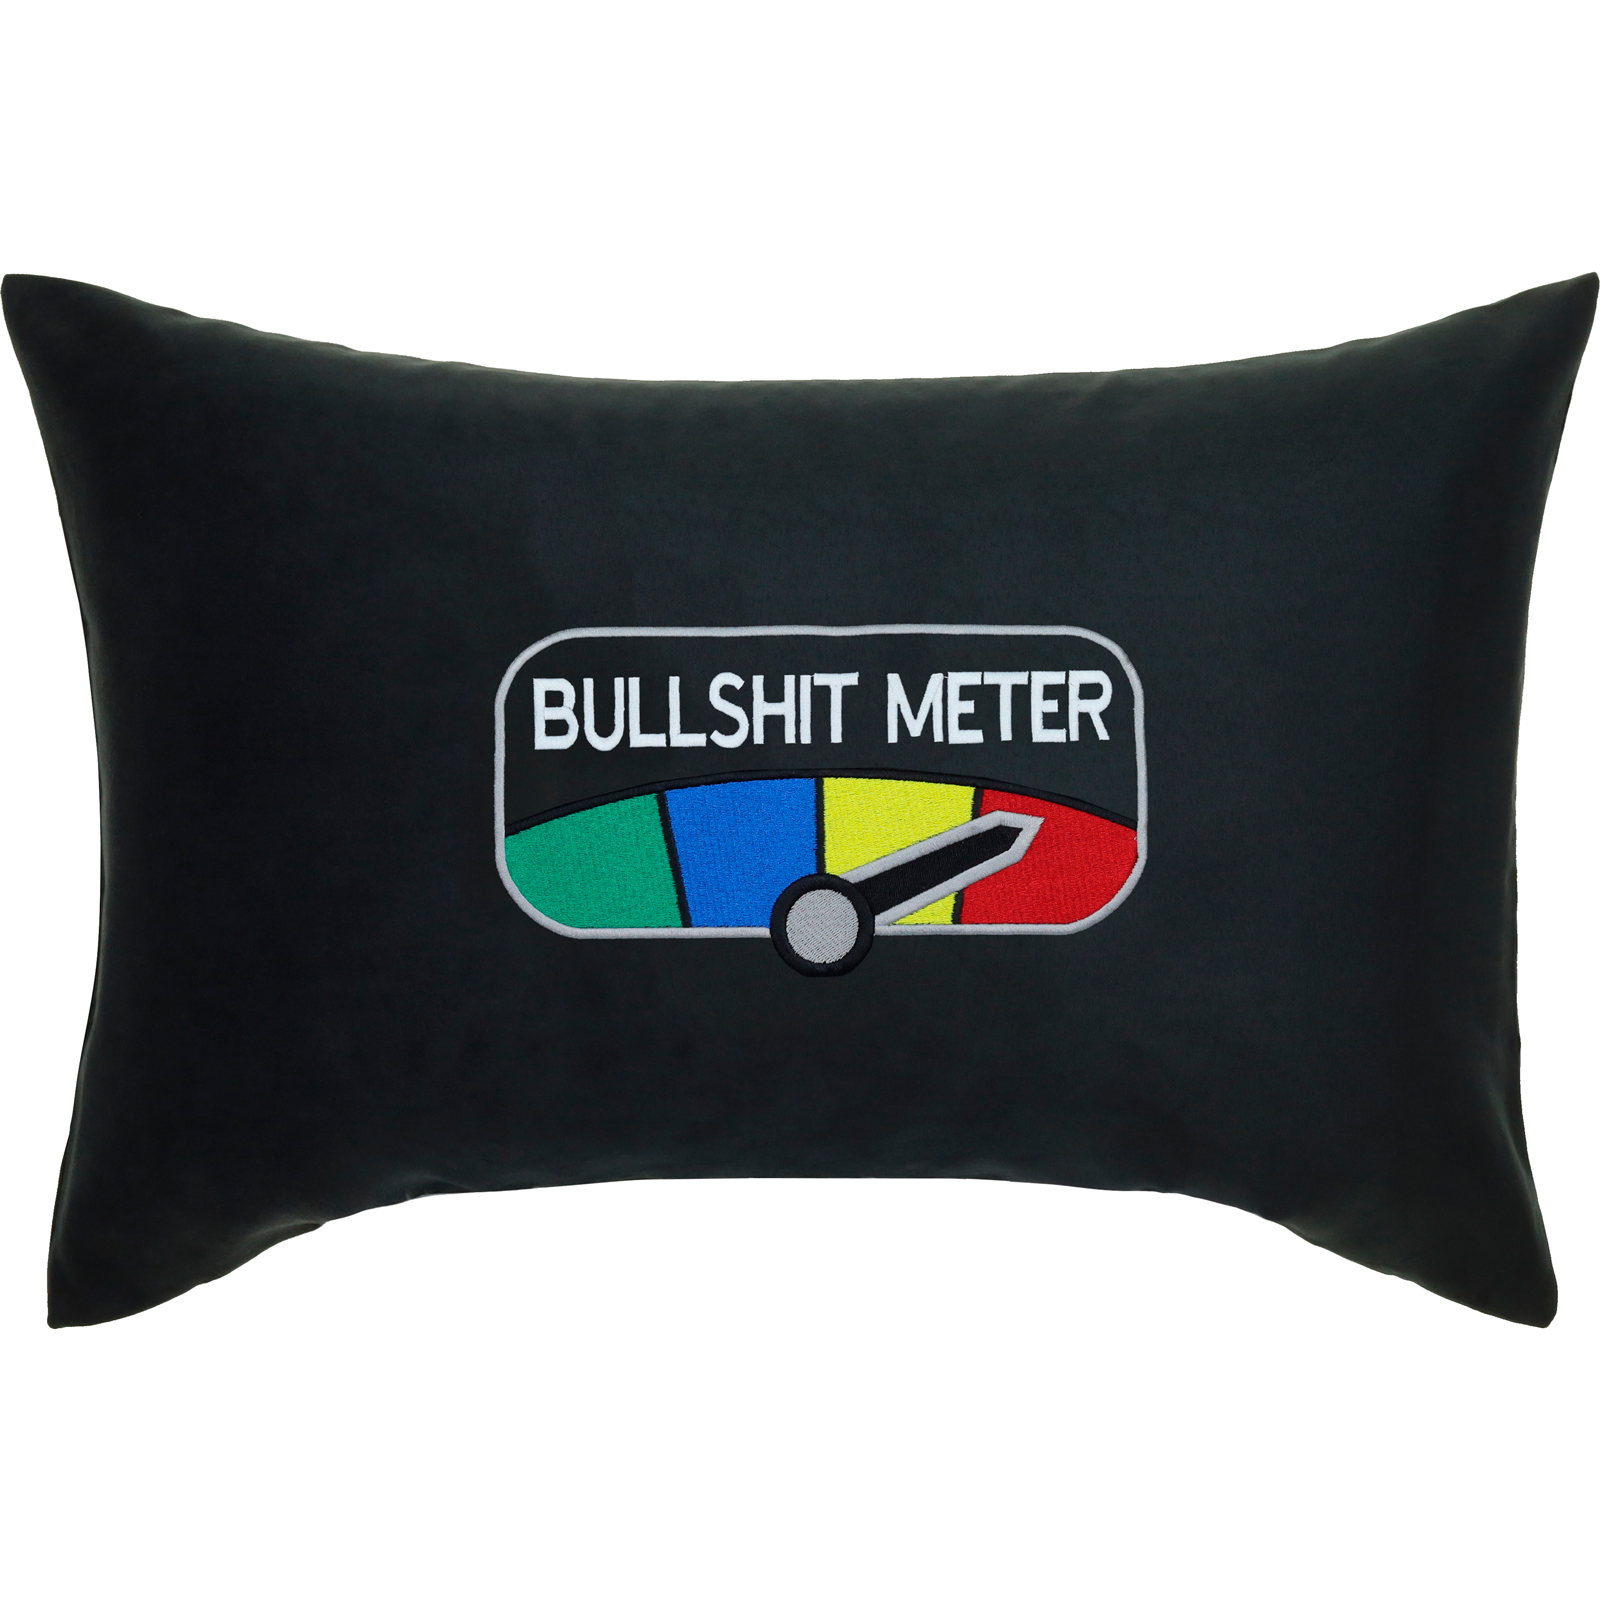 Bullshit Meter